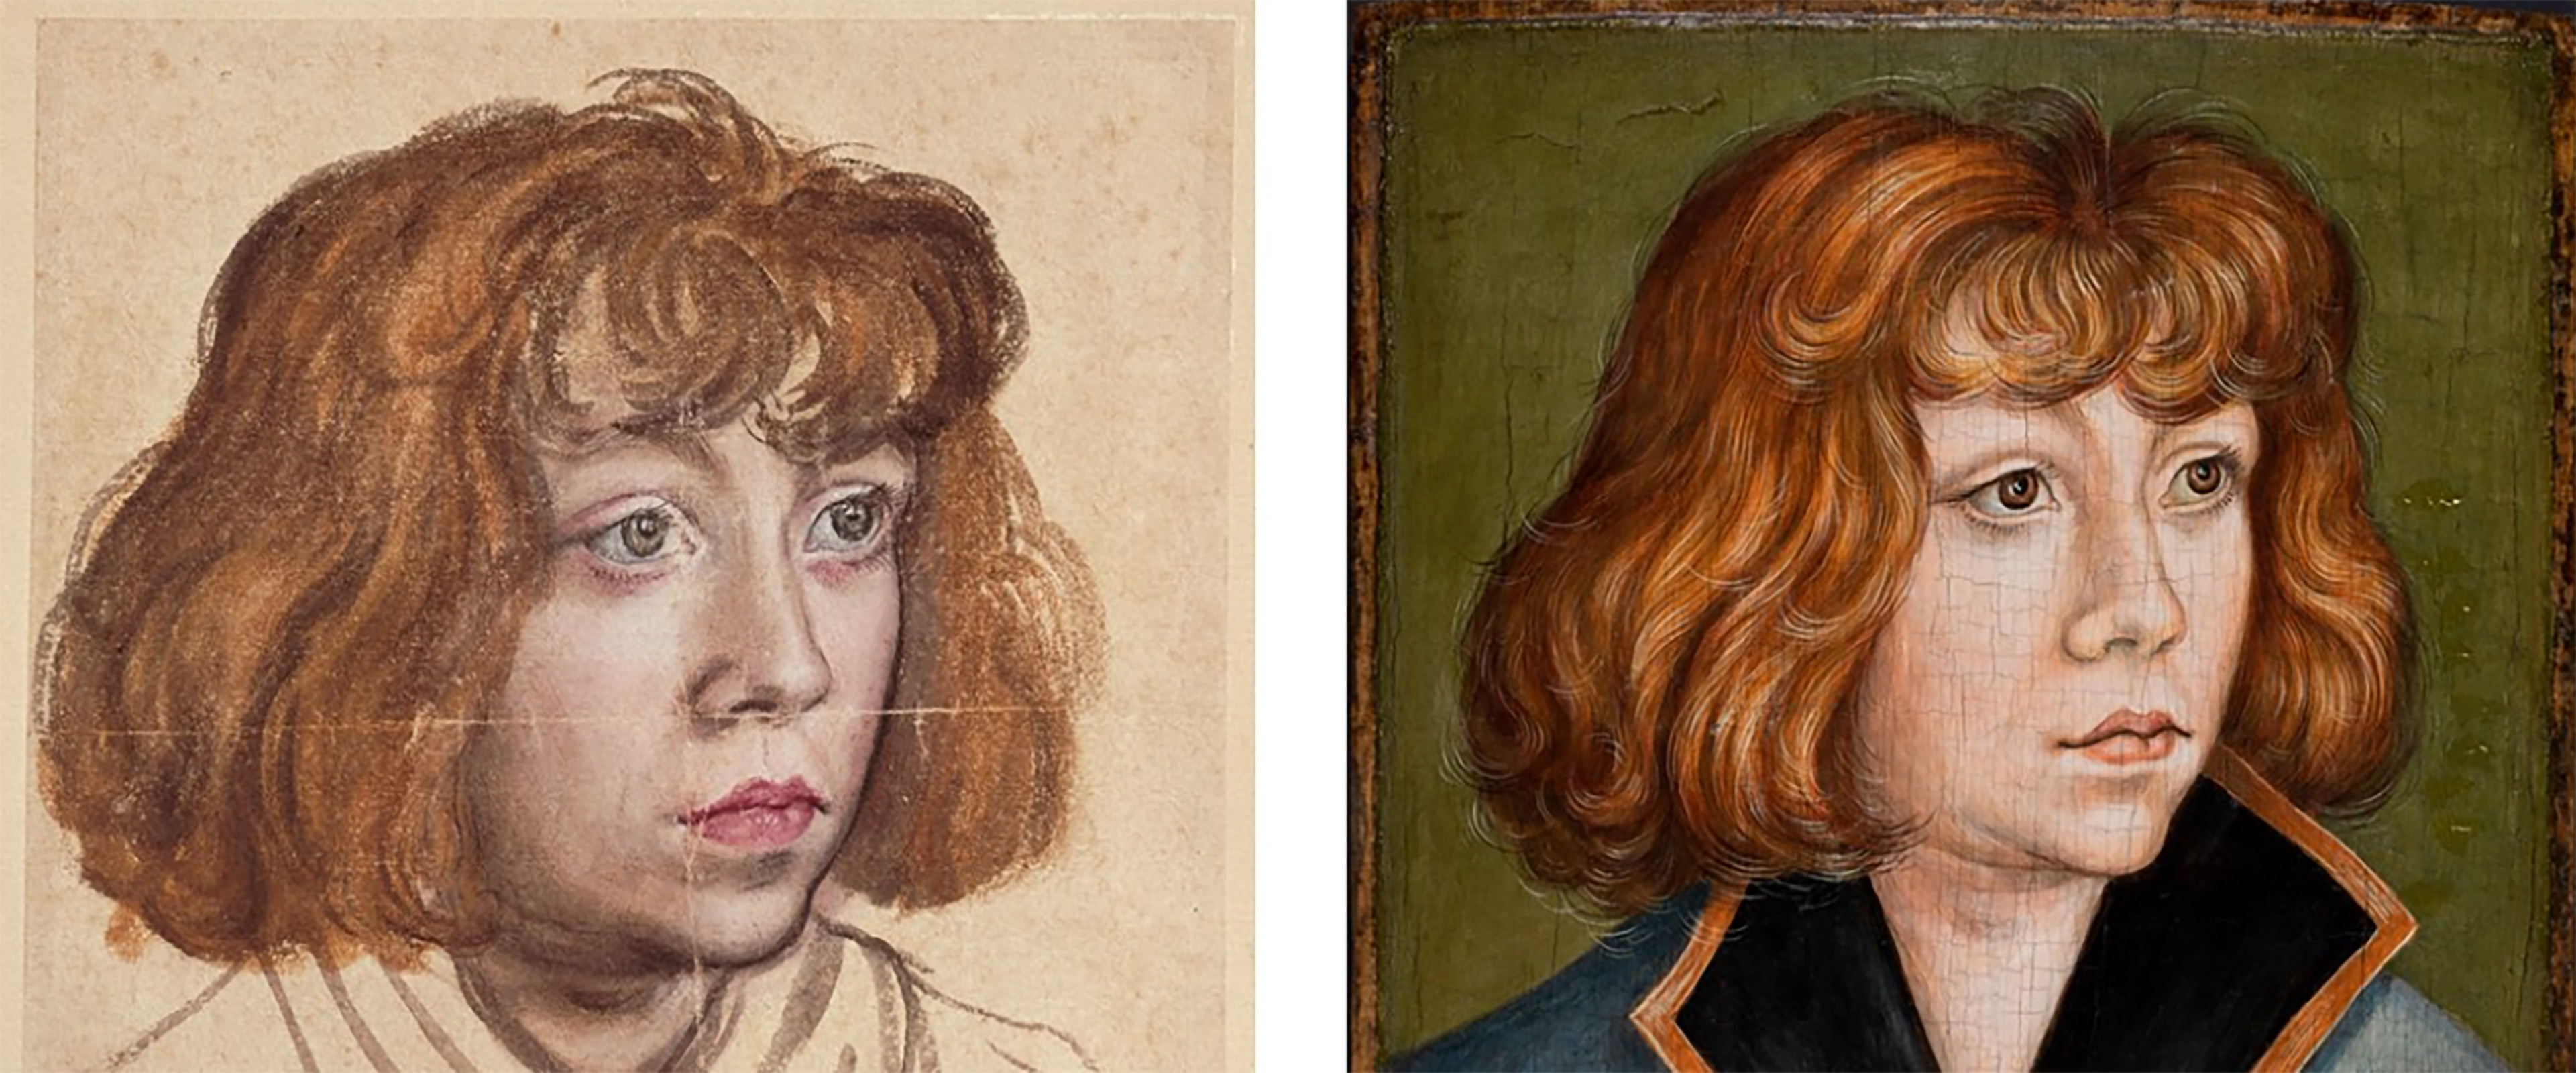 Zwei Porträt-Gemälde nebeneinander